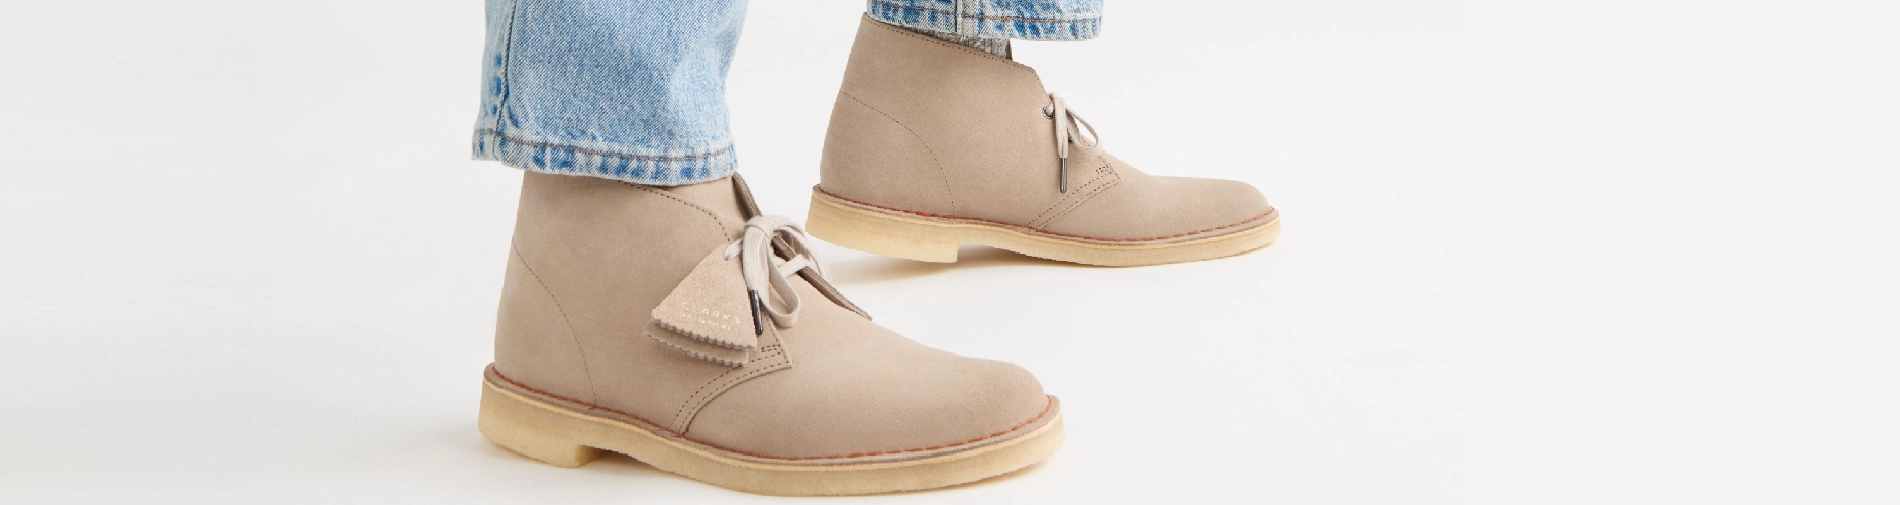 Mooi karbonade lijn Heren schoenen | De Schoenenfabriek